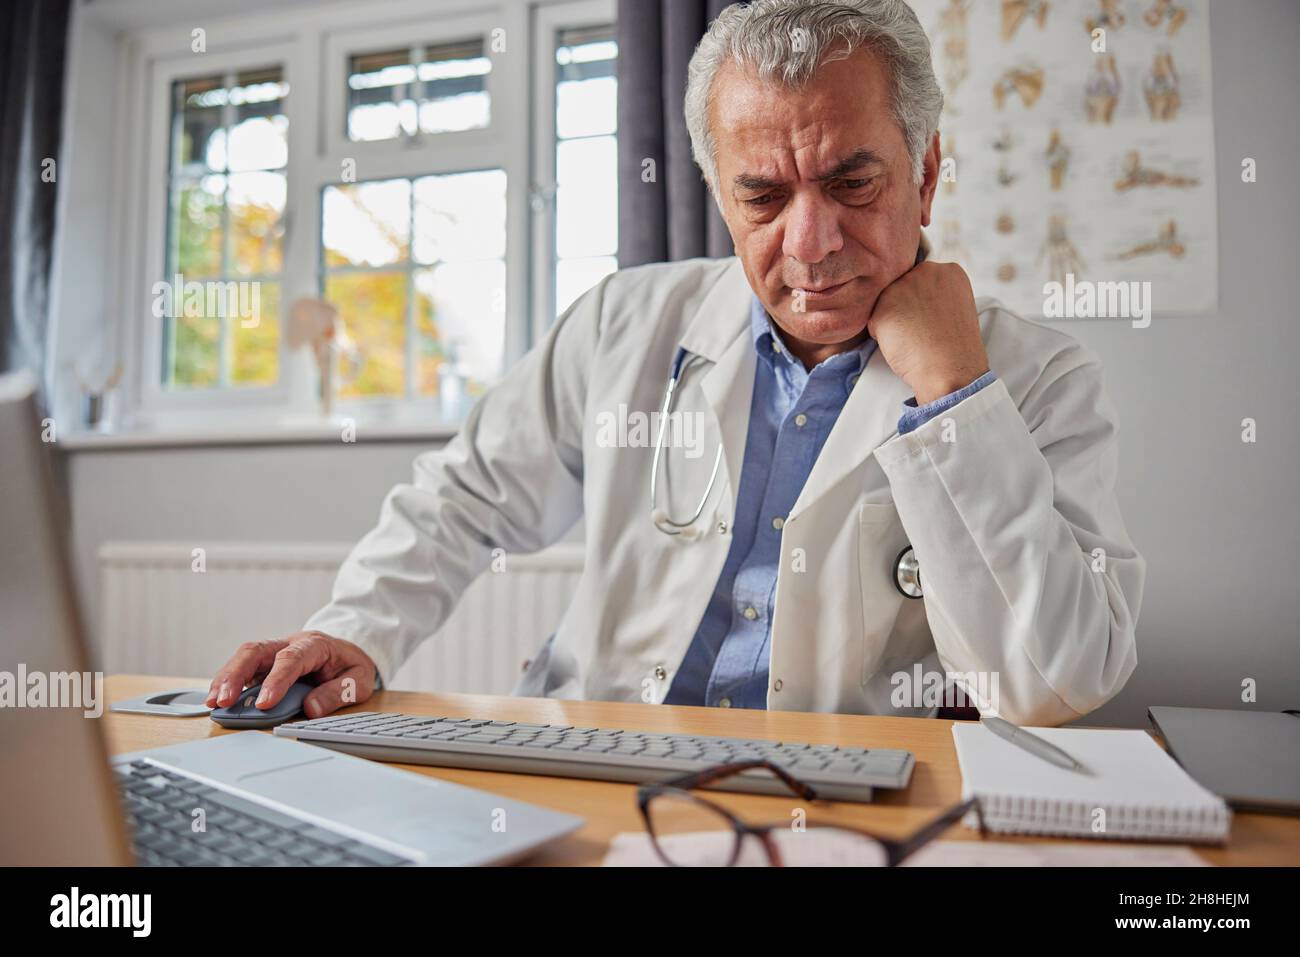 El GP Macho maduro estresado y trabajado en exceso usando el abrigo blanco en el escritorio en la oficina de los doctores Foto de stock